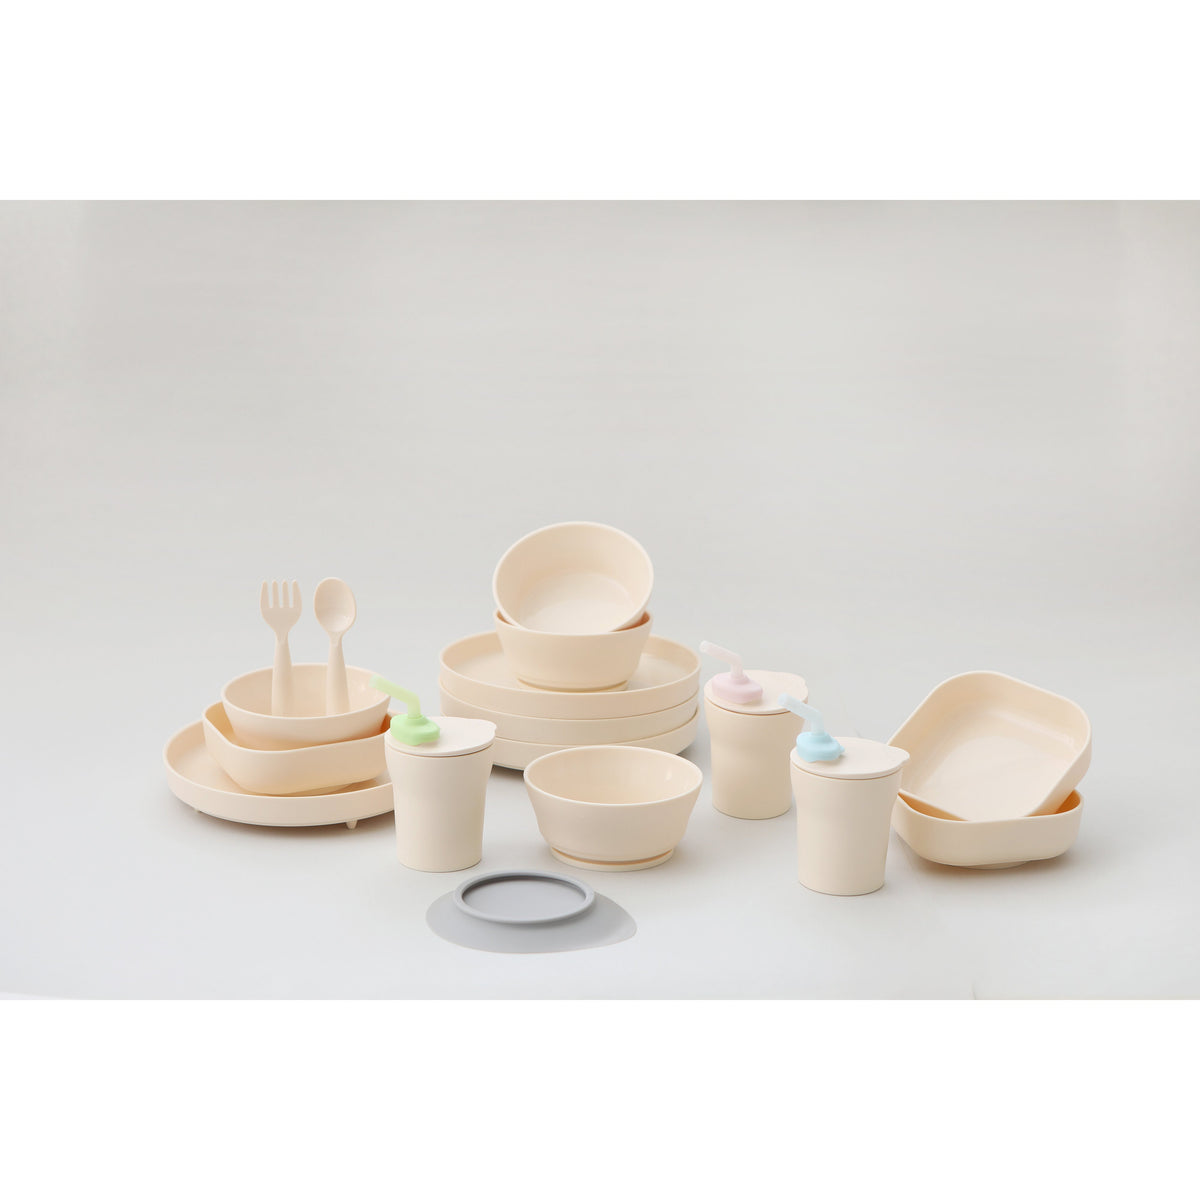 miniware-snack-bowl-set-pla-suction-bowl-vanilla-silicone-cover-in-aqua- (15)